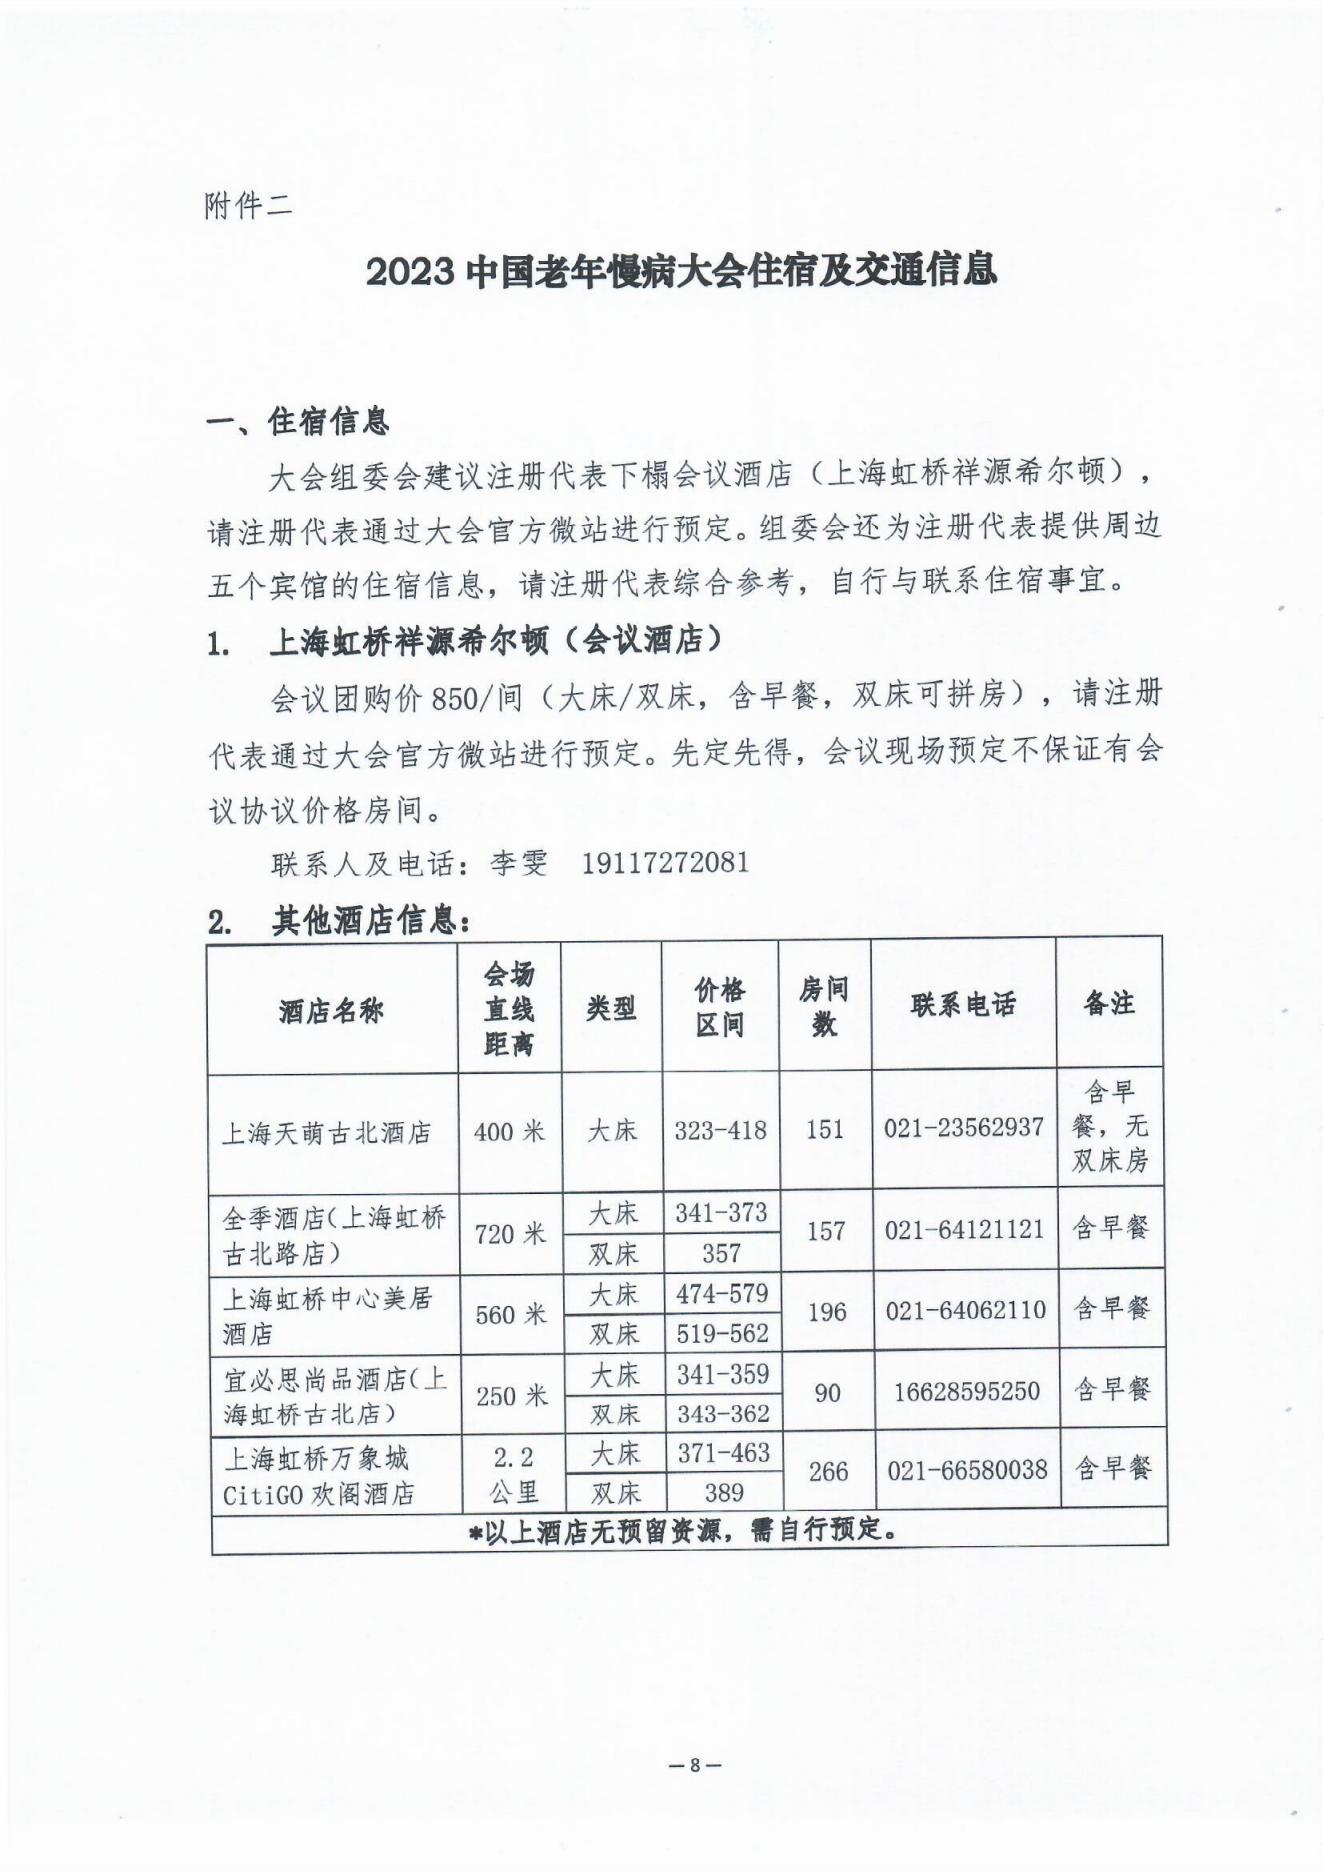 2023中国老年慢病大会会议通知（第二轮）0606(1)_07.jpg